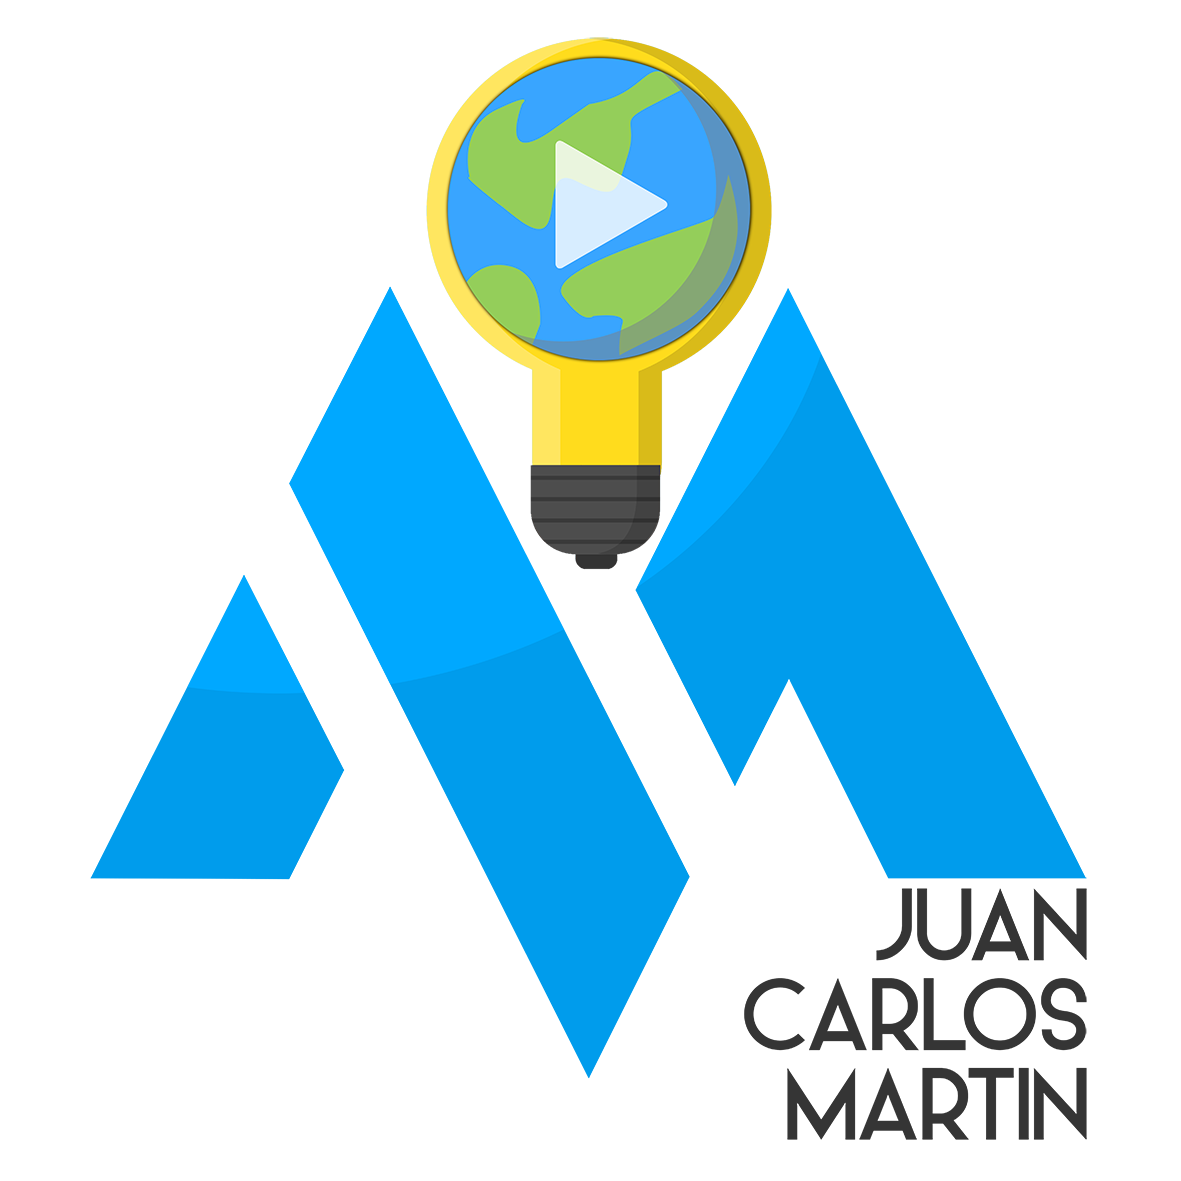 Juan Carlos Martin